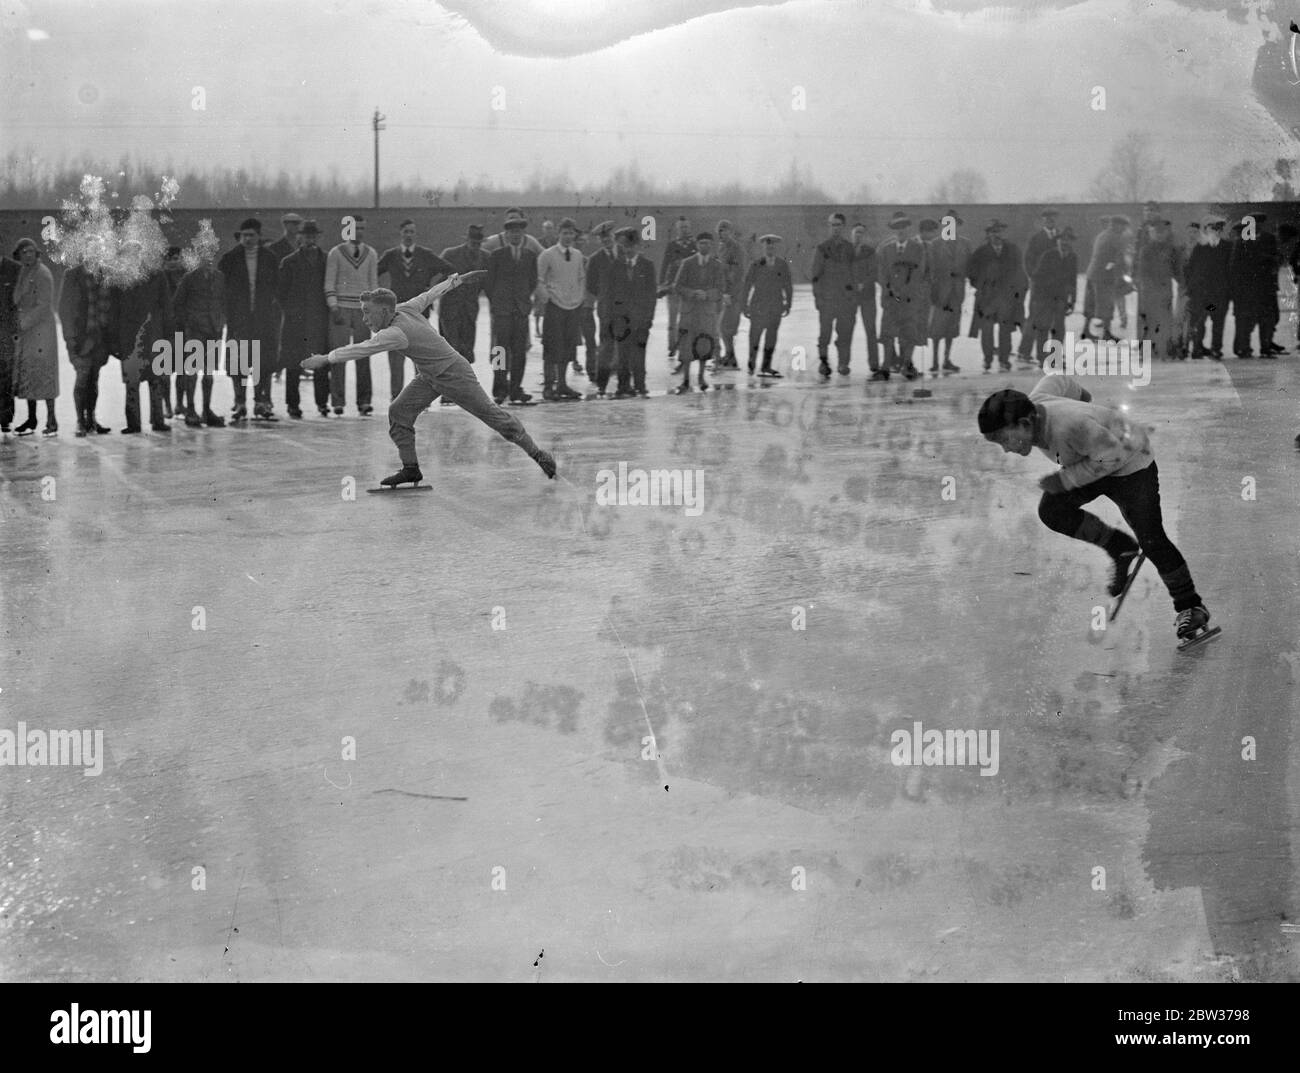 Championnats britanniques de patinage amateur tenus à Lingay Fen . Le championnat britannique de patinage amateur pour la coupe King Edward a eu lieu à Lingay Fen , Cambridgeshire . Photos ; A J carter et Bobbie Redburn , dix ans ( caméra la plus proche ) tout dans la course . 16 décembre 1933 Banque D'Images